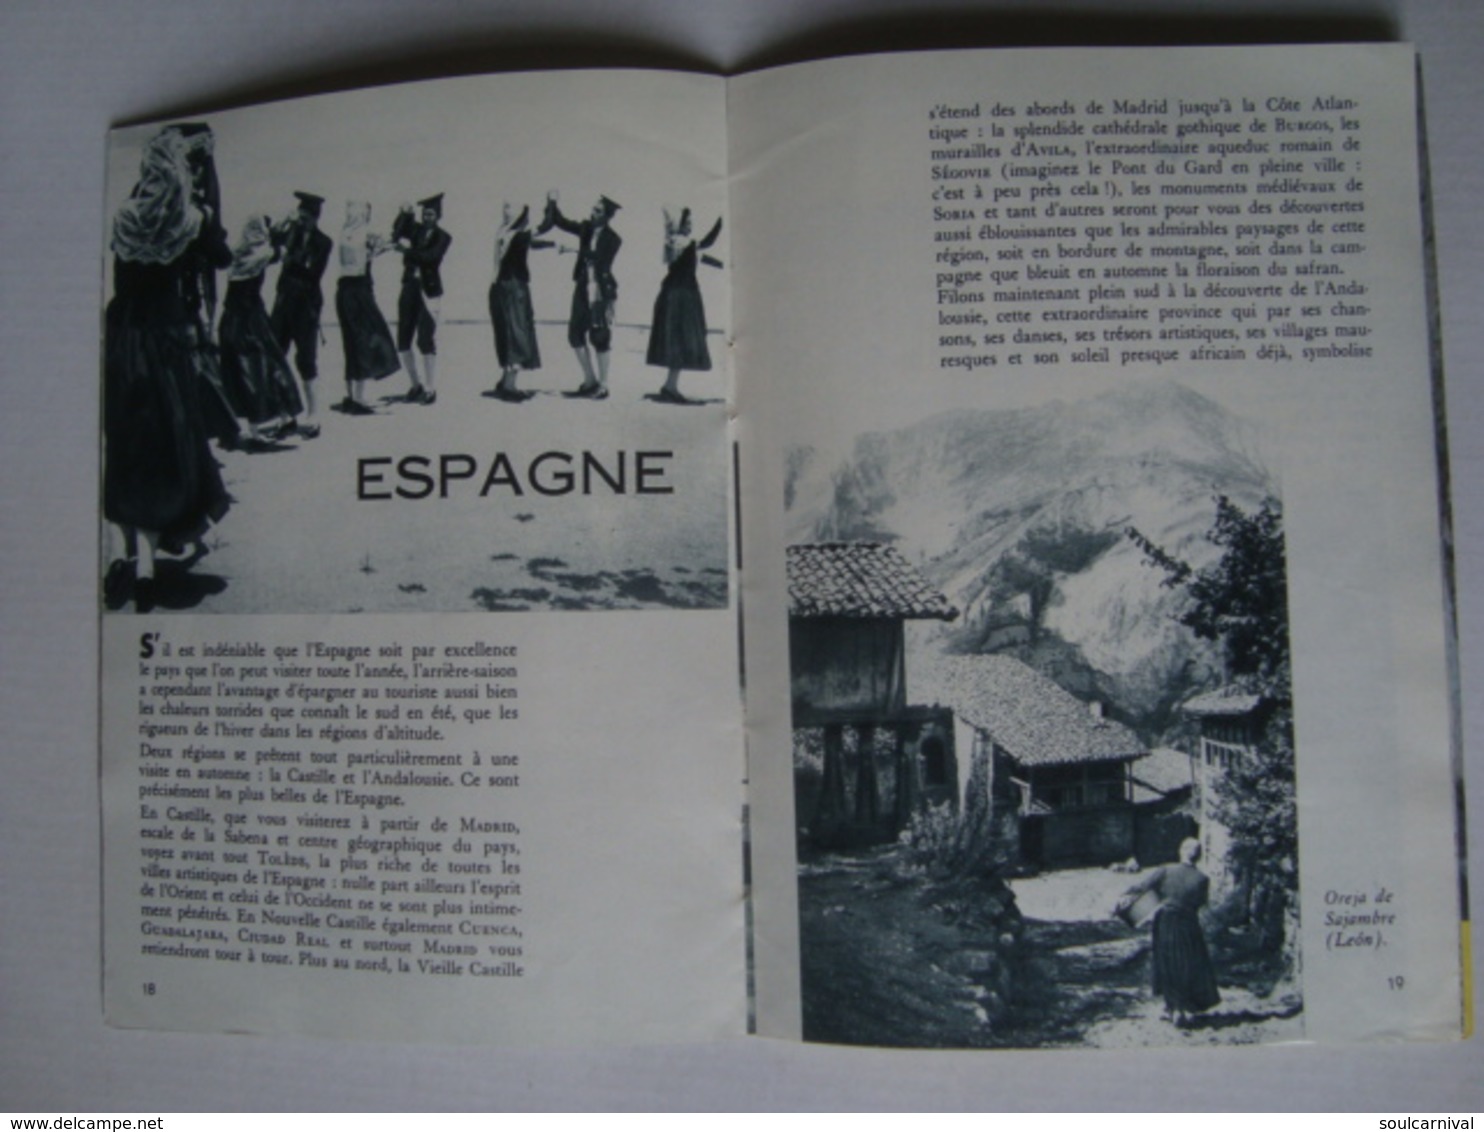 SABENA MAGAZINE. VACANCES D’ARRIÈRE-SAISON - BELGIUM, SEPTEMBRE 1961. - Inflight Magazines